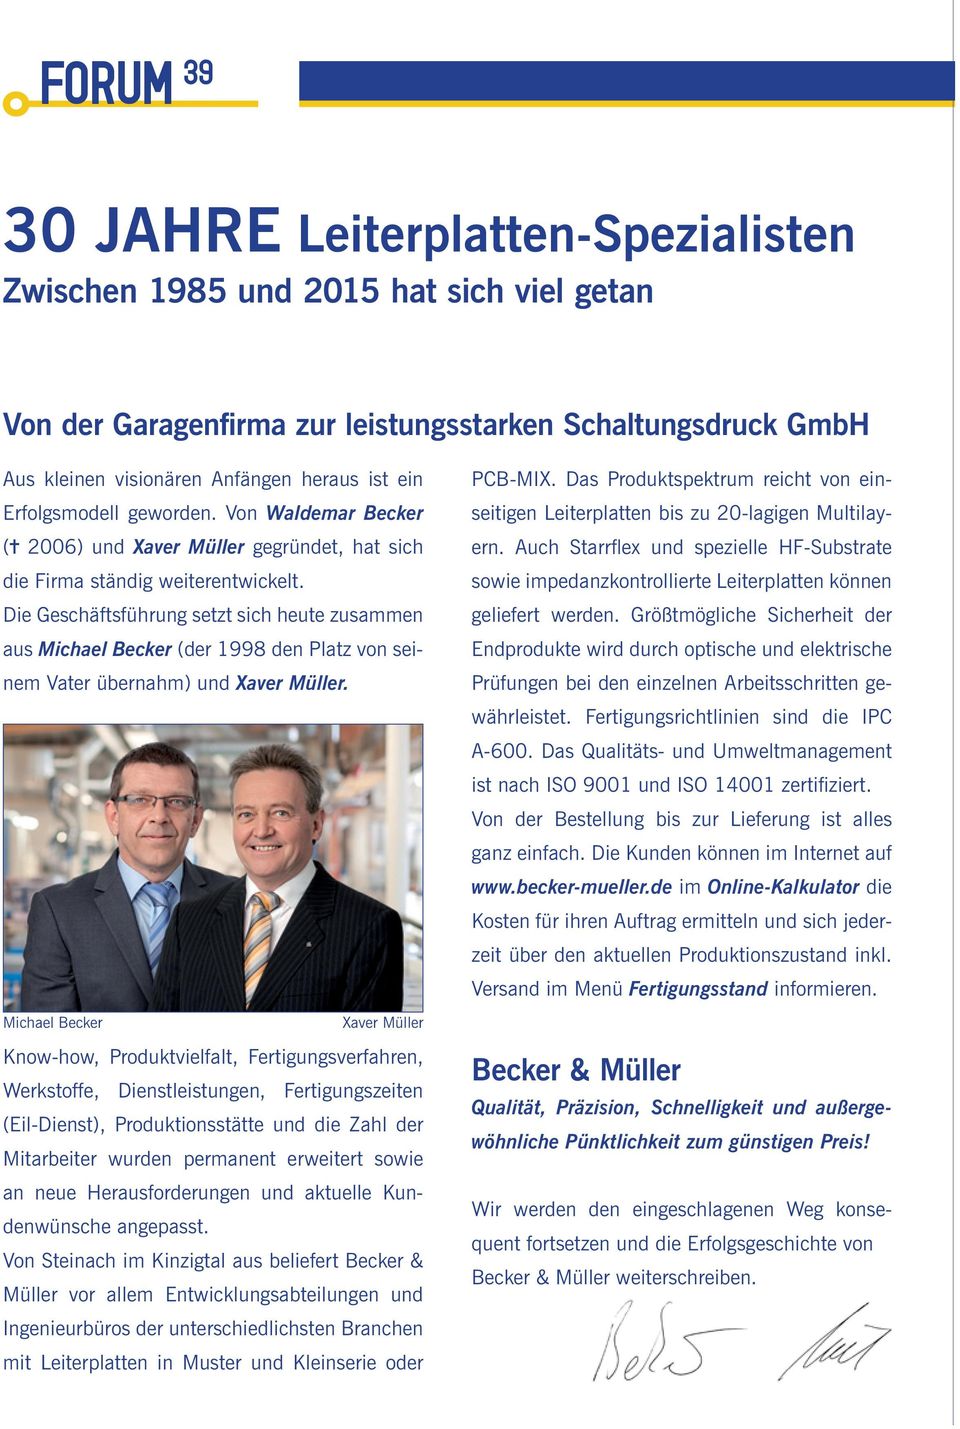 Die Geschäftsführung setzt sich heute zusammen aus Michael Becker (der 1998 den Platz von seinem Vater übernahm) und Xaver Müller.